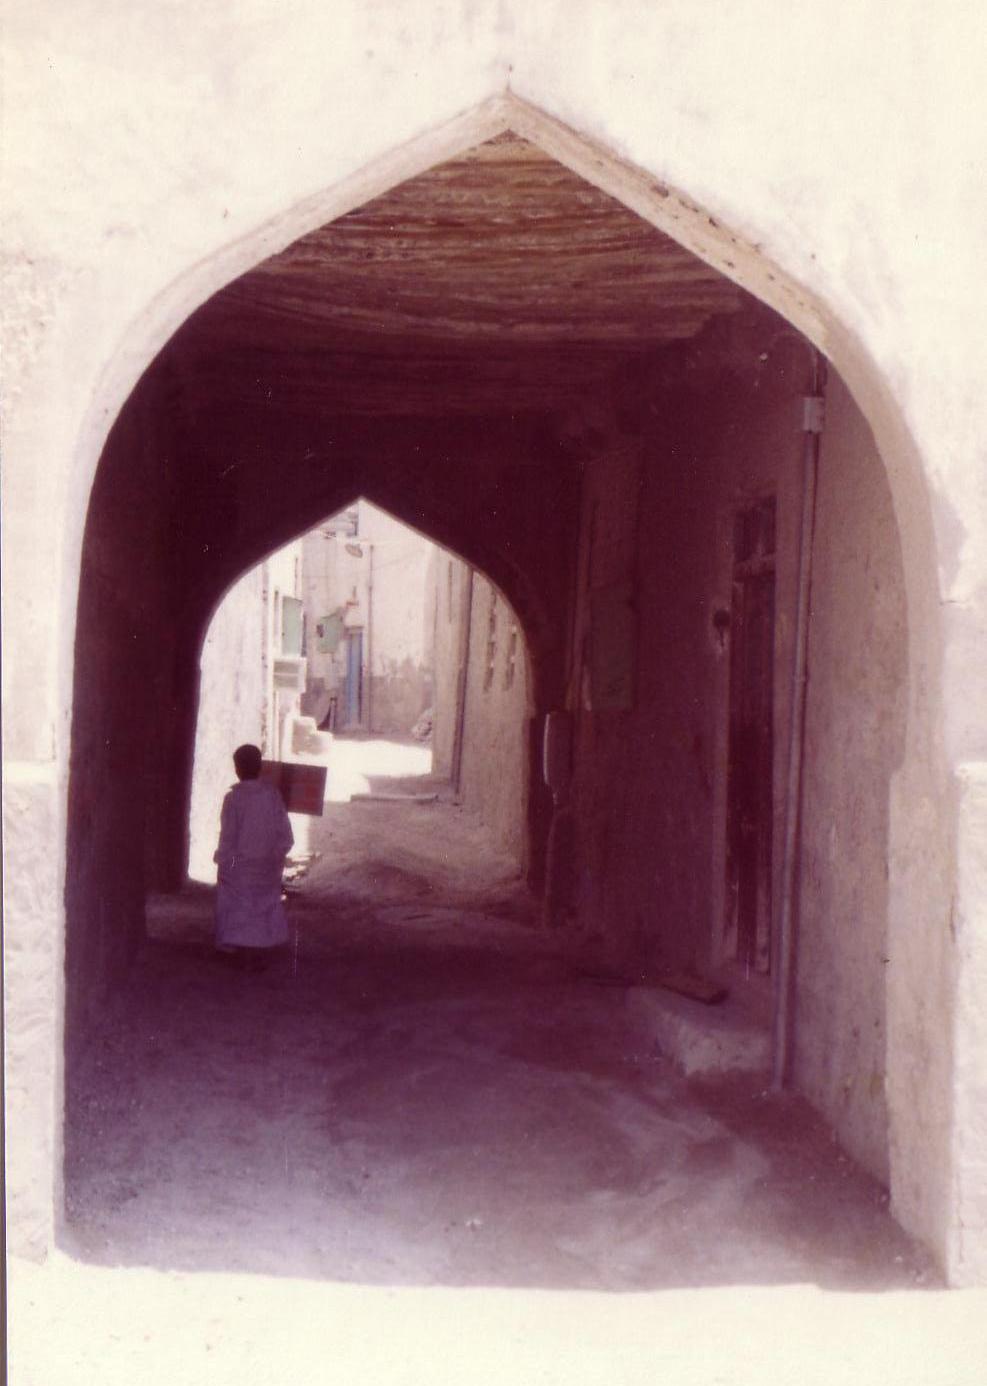 Alleyway in Qatif